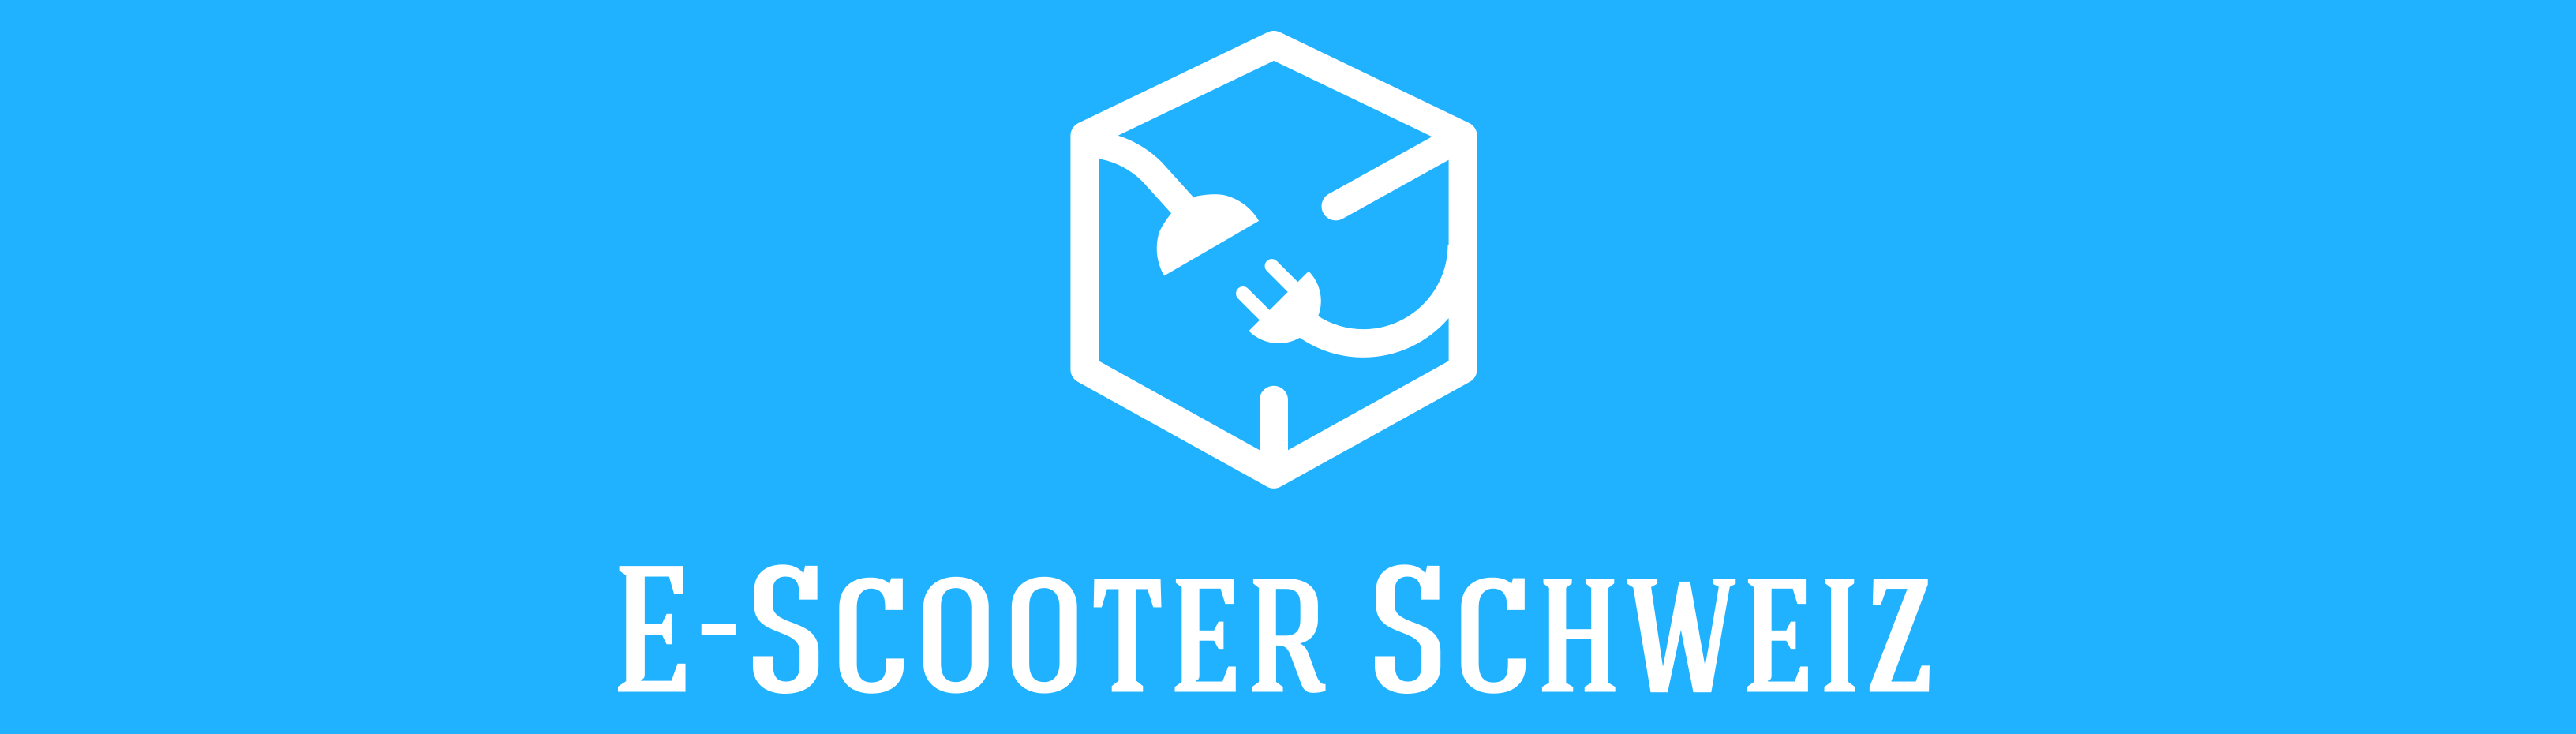 E-Scooter Schweiz